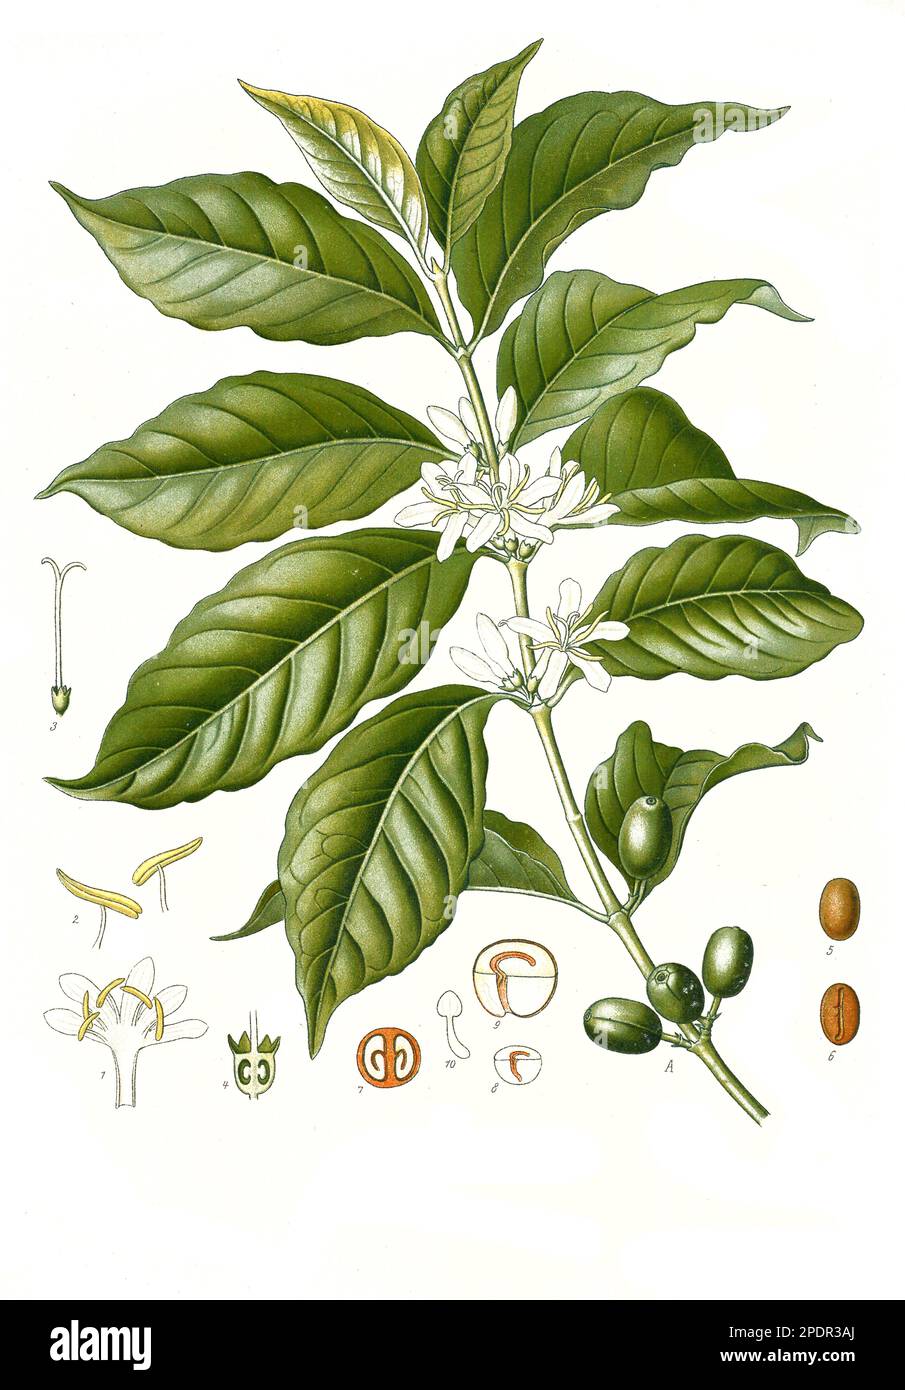 Heilpflanze, Arabica-Kaffee, (Coffea arabica), auch Bergkaffee oder Javakaffee, Kaffeepflanze, Historisch, digital restaurierte Reproduktion von einer Vorlage aus dem 19. Jahrhundert, Stock Photo